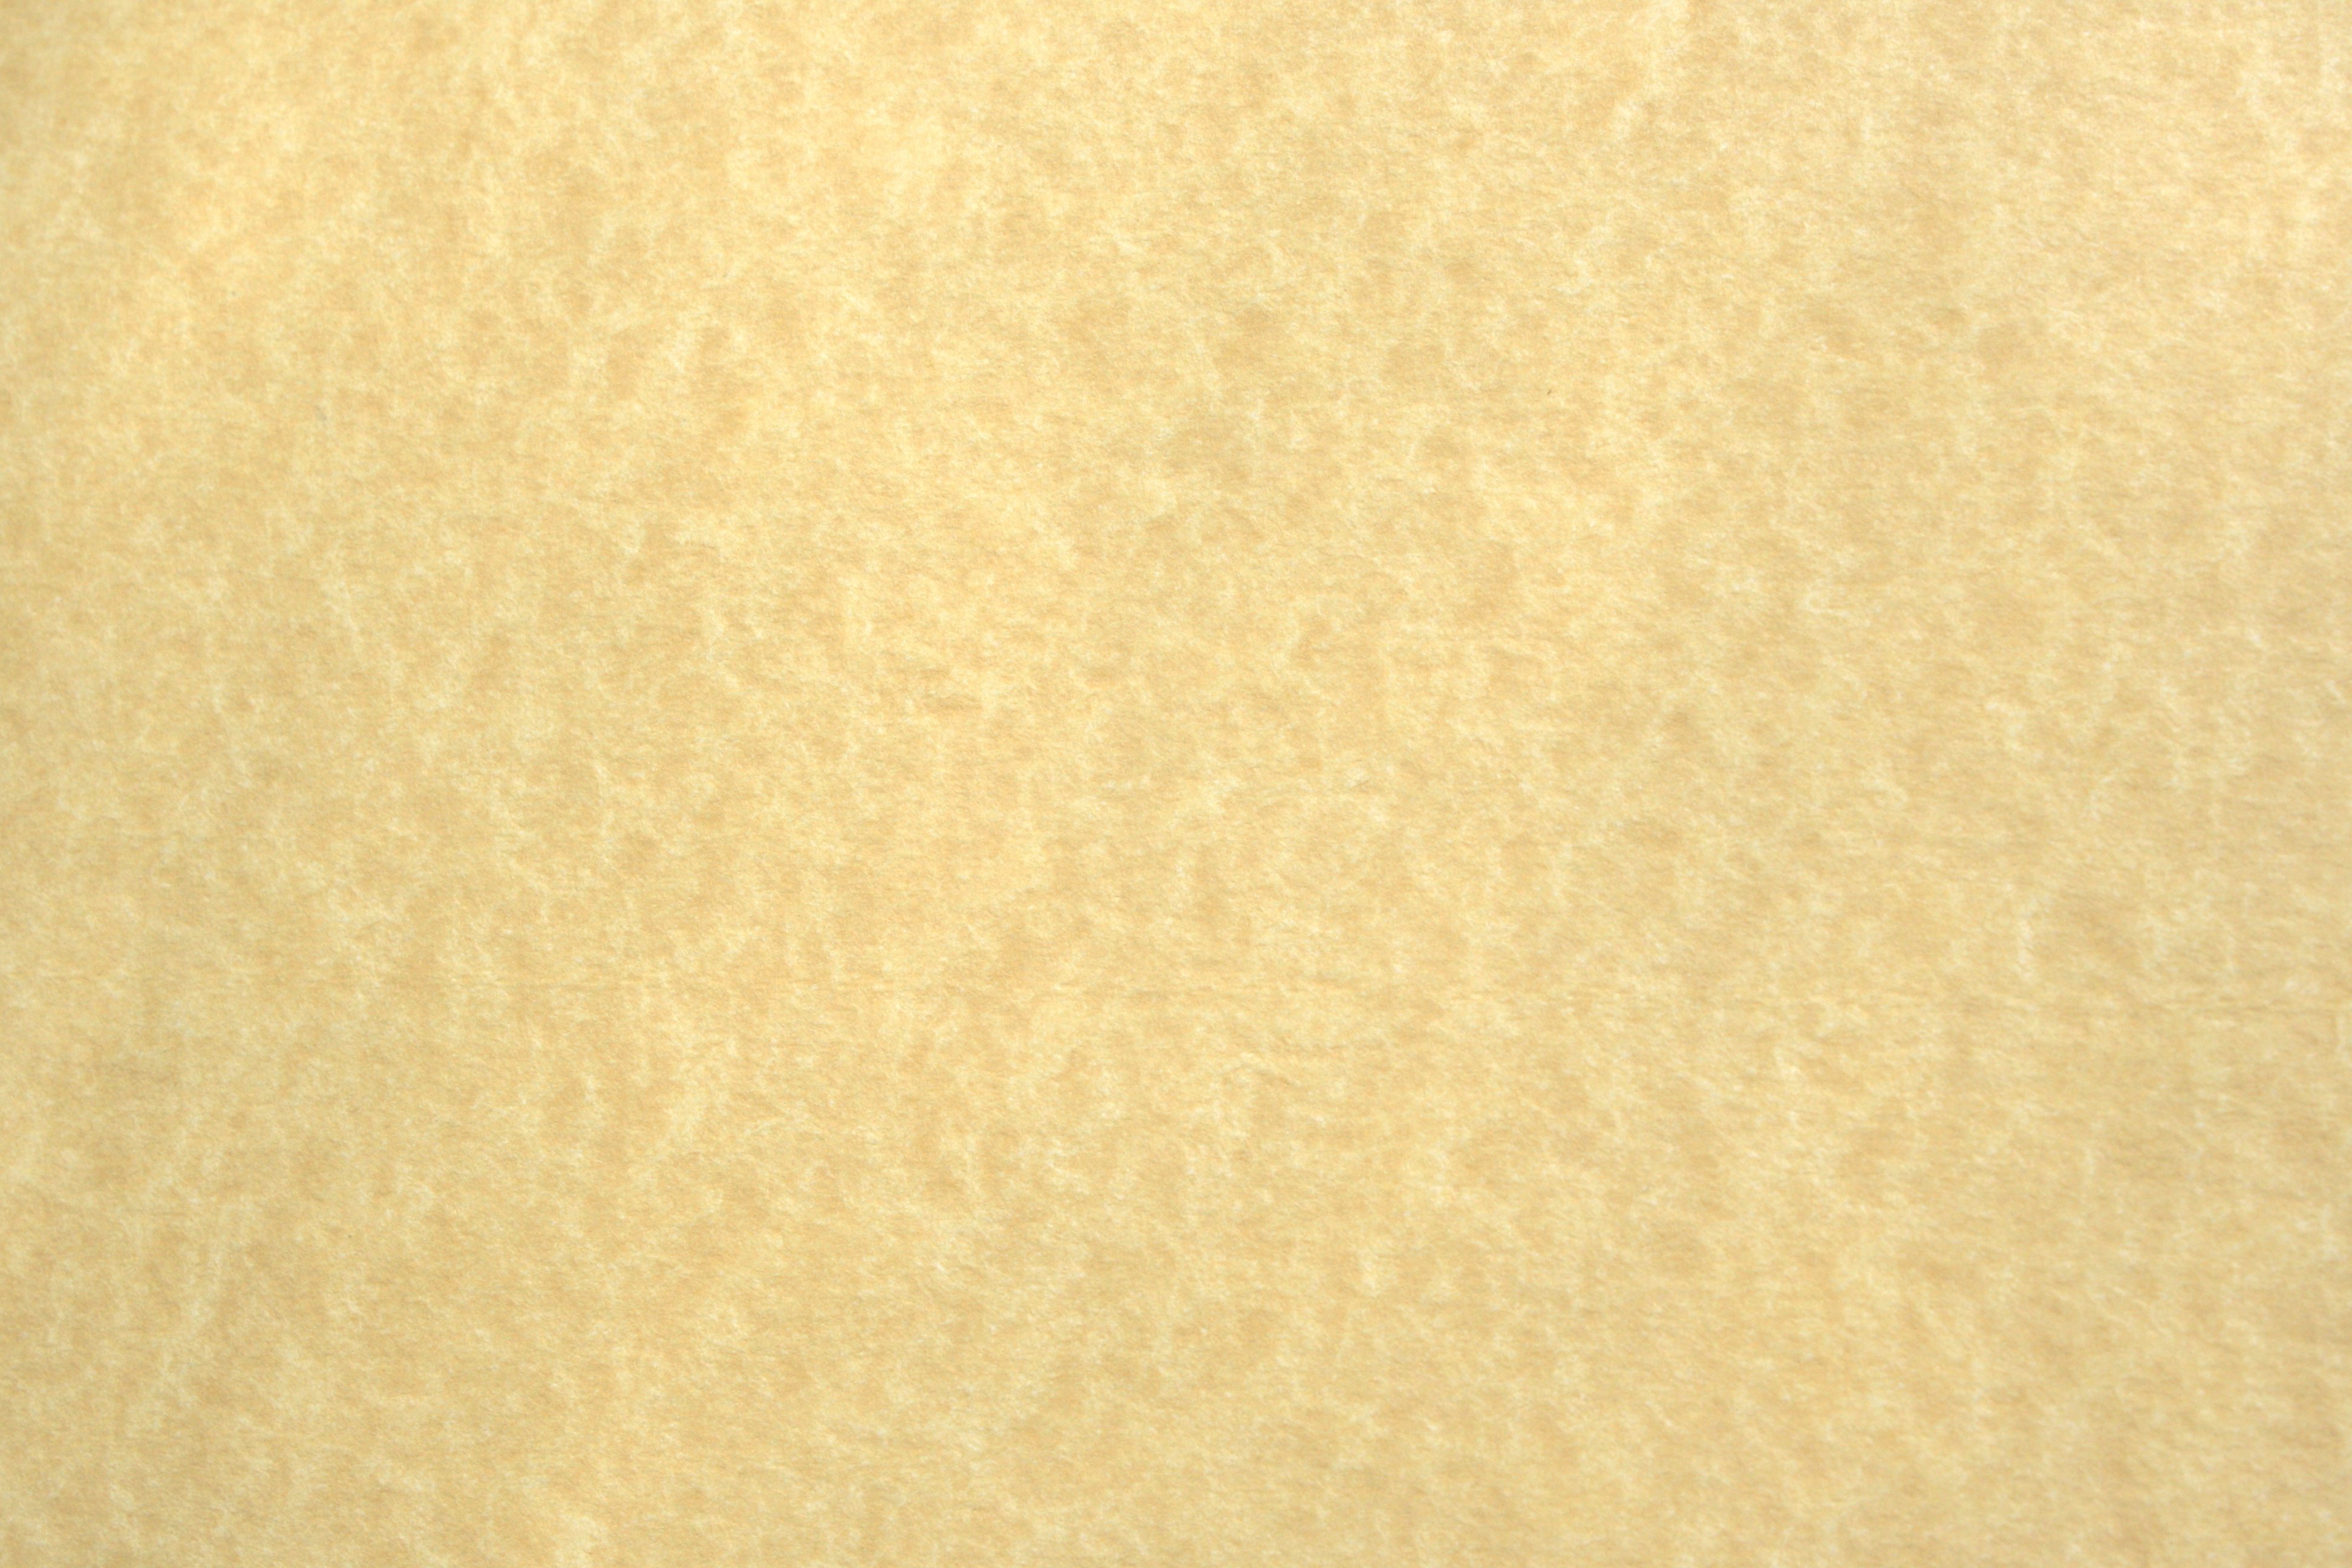 https://www.photos-public-domain.com/wp-content/uploads/2011/02/parchment-paper-light-texture.jpg